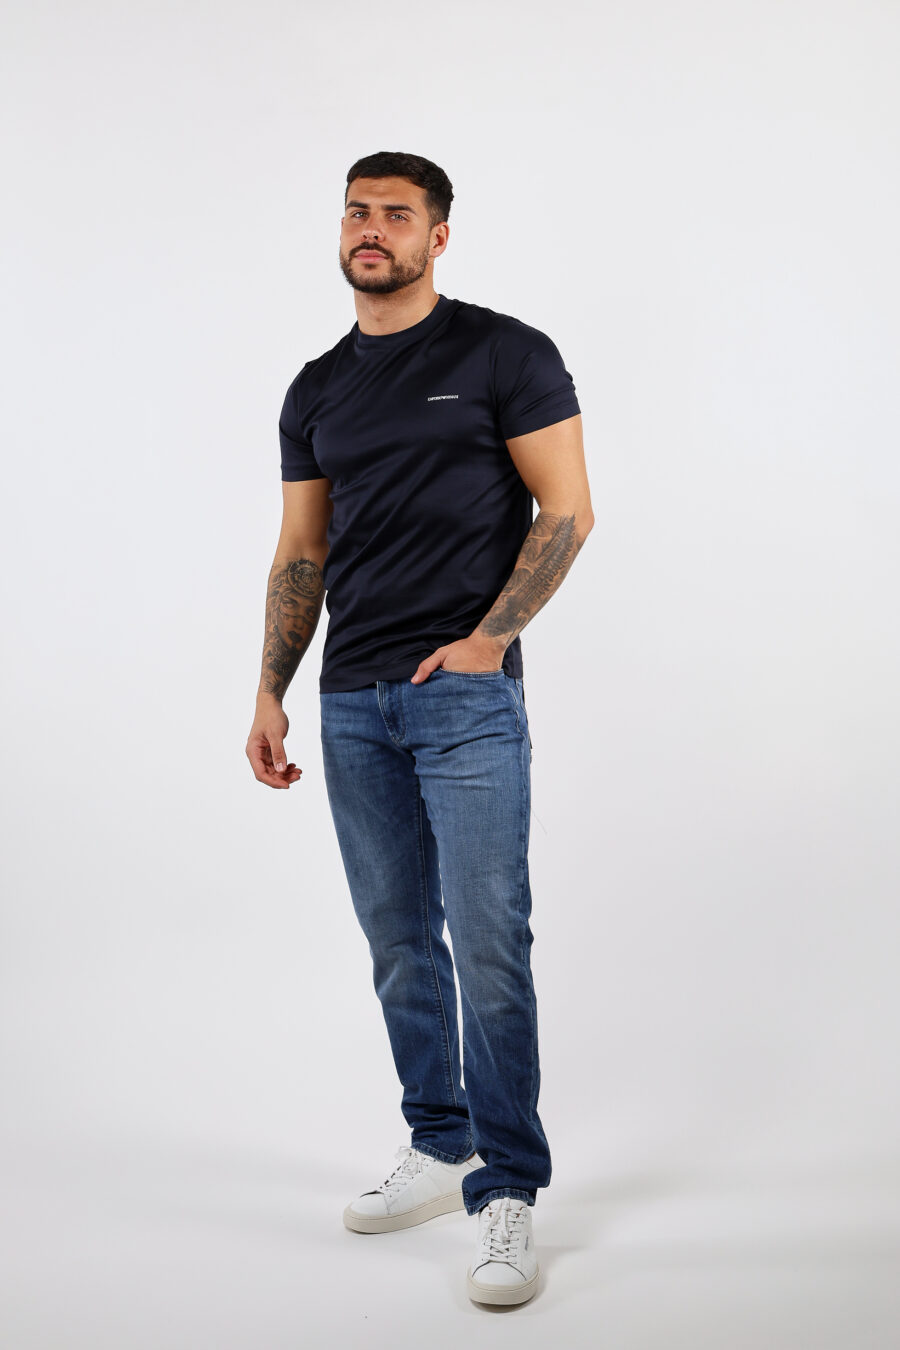 Camiseta azul oscuro con minilogo "emporio" - BLS Fashion 24